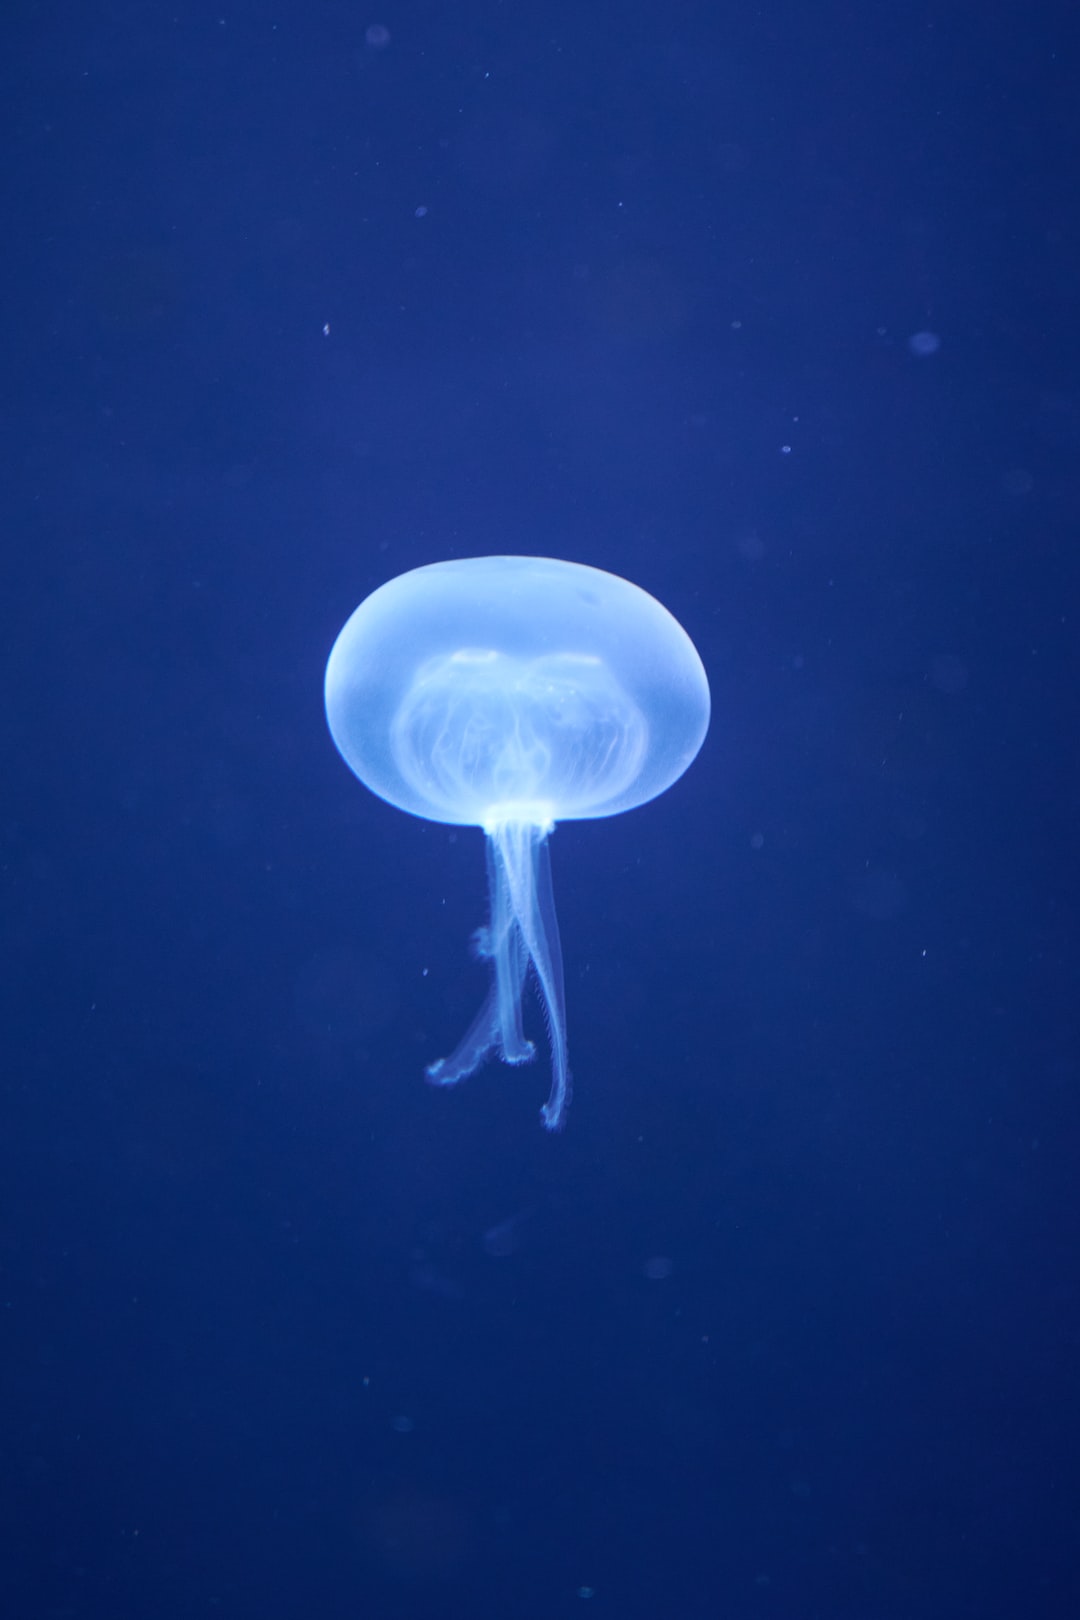 22 Aussergewöhnliche Fakten zu Full Spectrum Aquarium Light